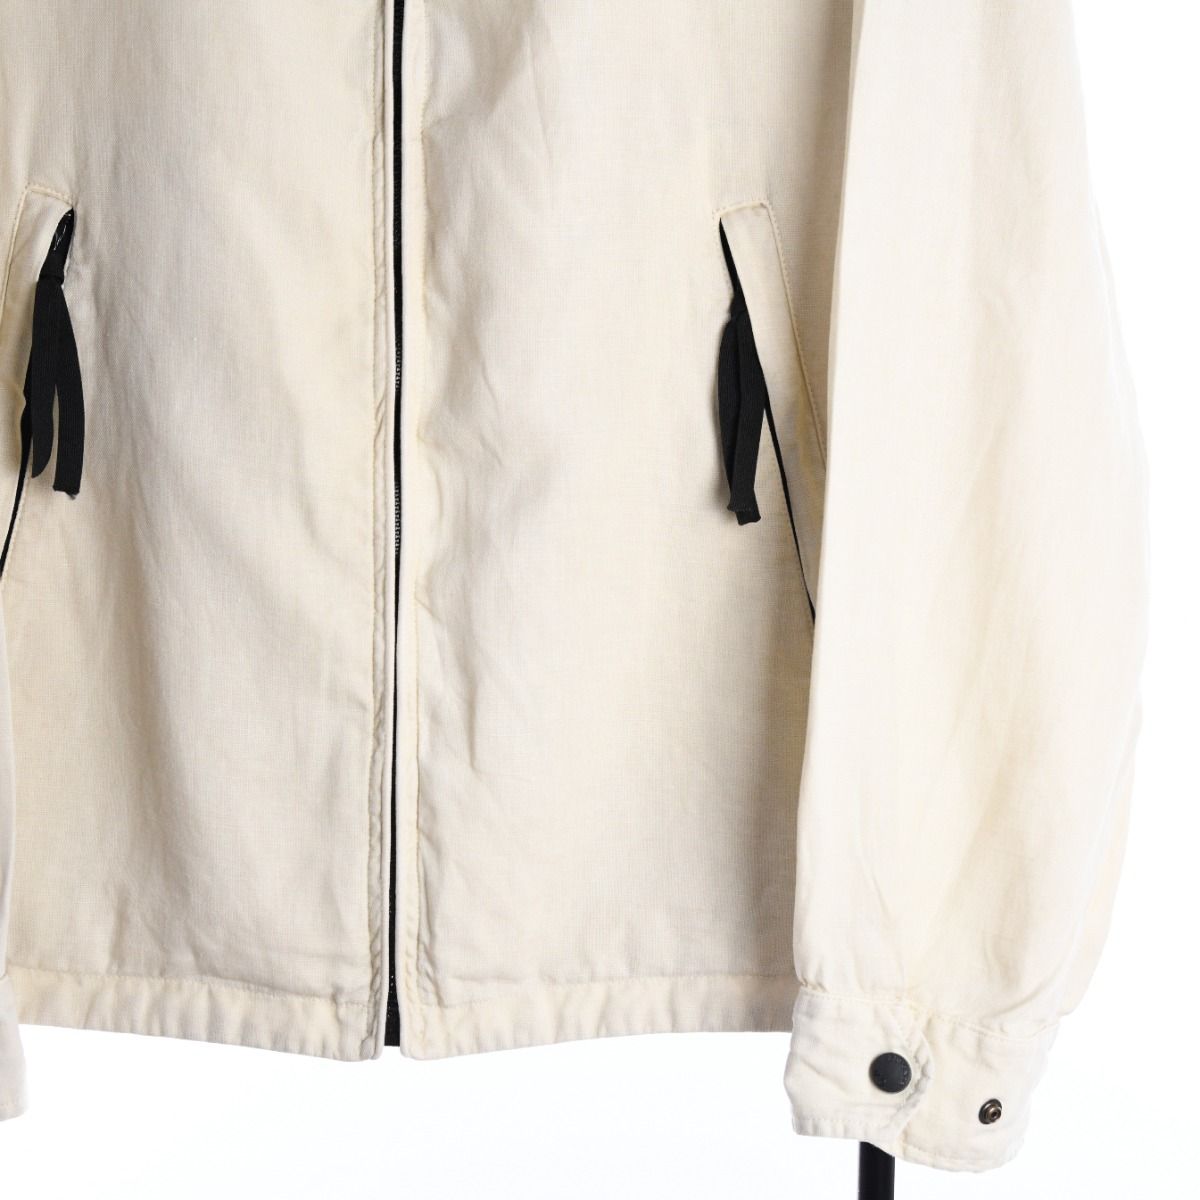 CP Company SS 1999 Linen Jacket